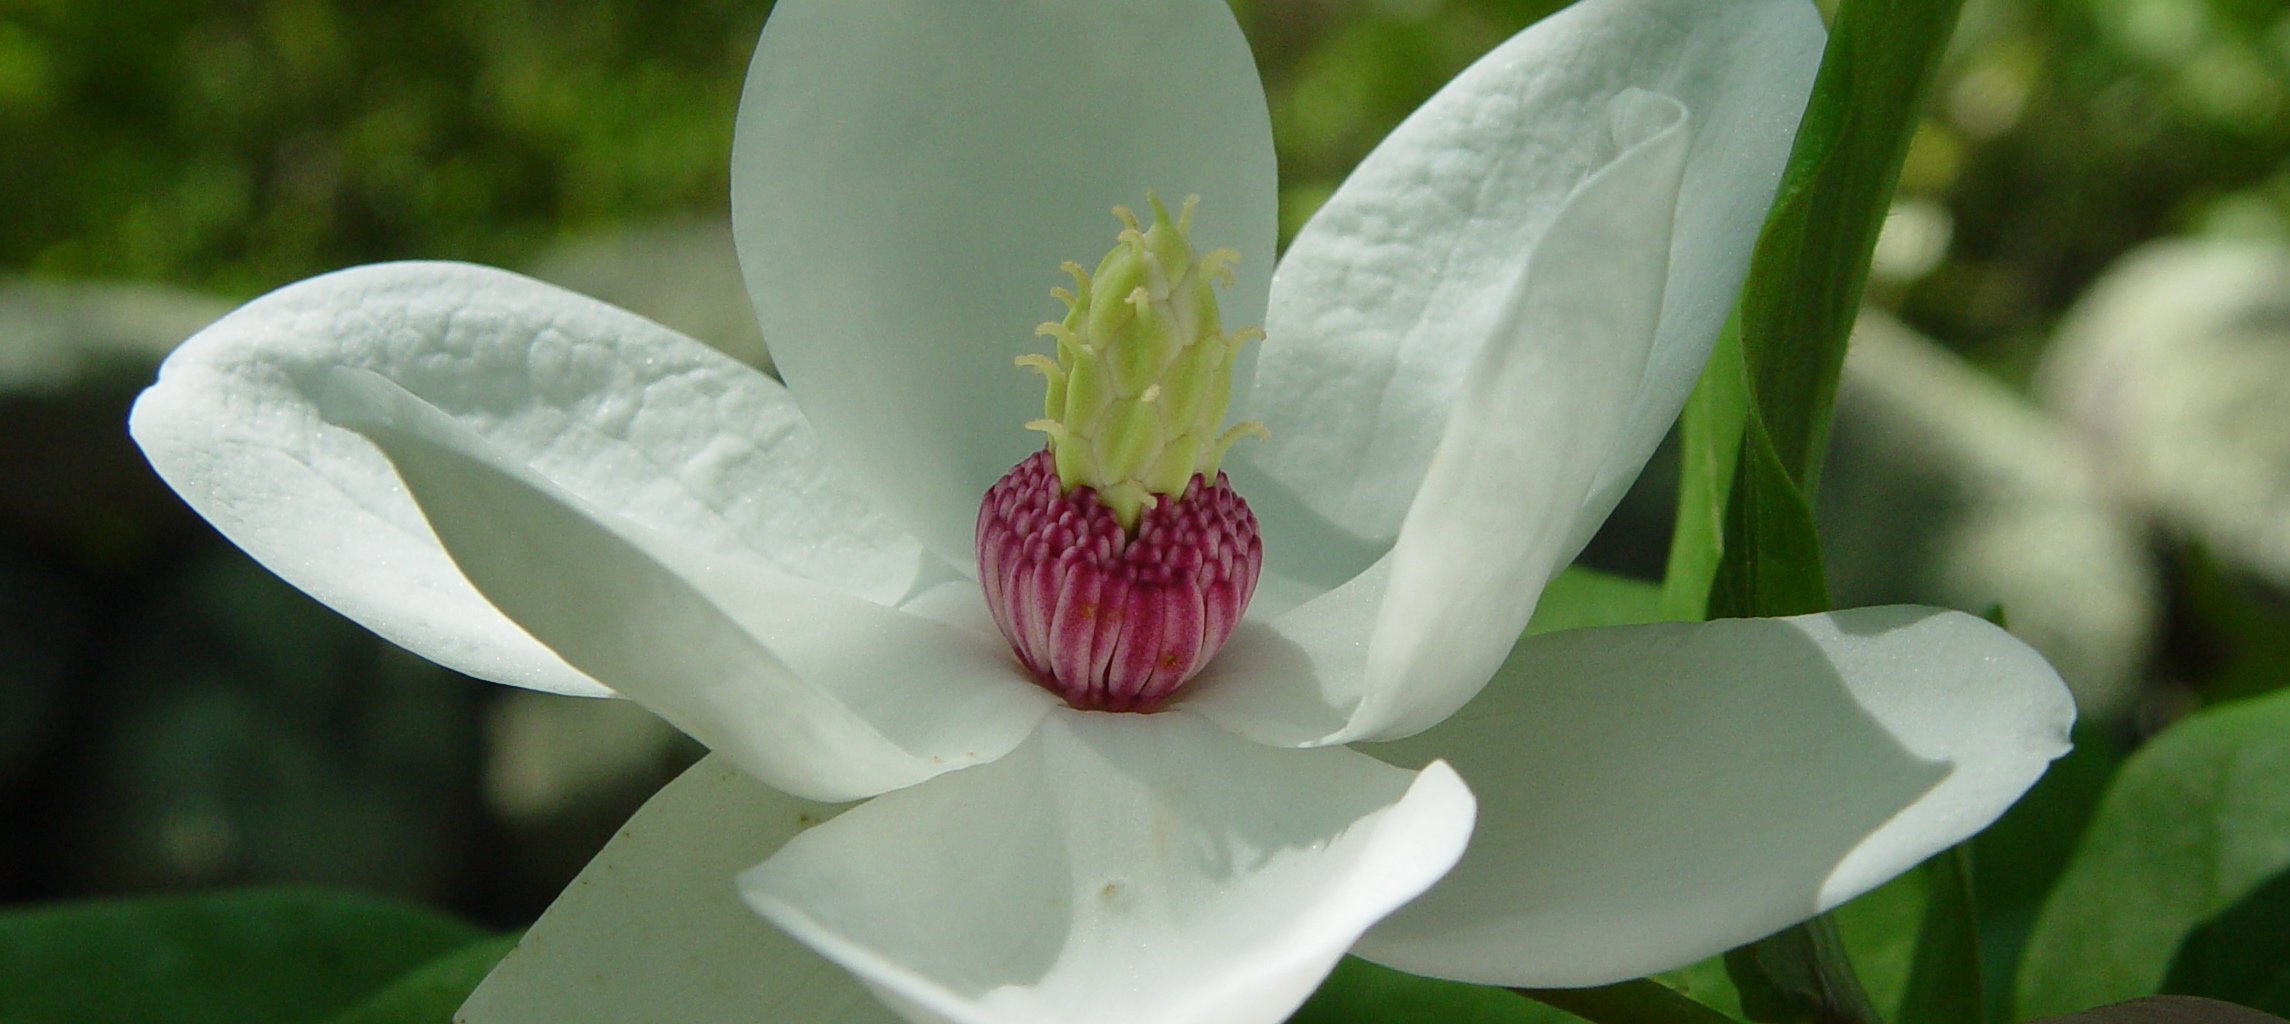 Magnolijos yra simbolinis Amerikos pietų simbolis, garsėjantis nuostabiais žiedais ir didingumu.